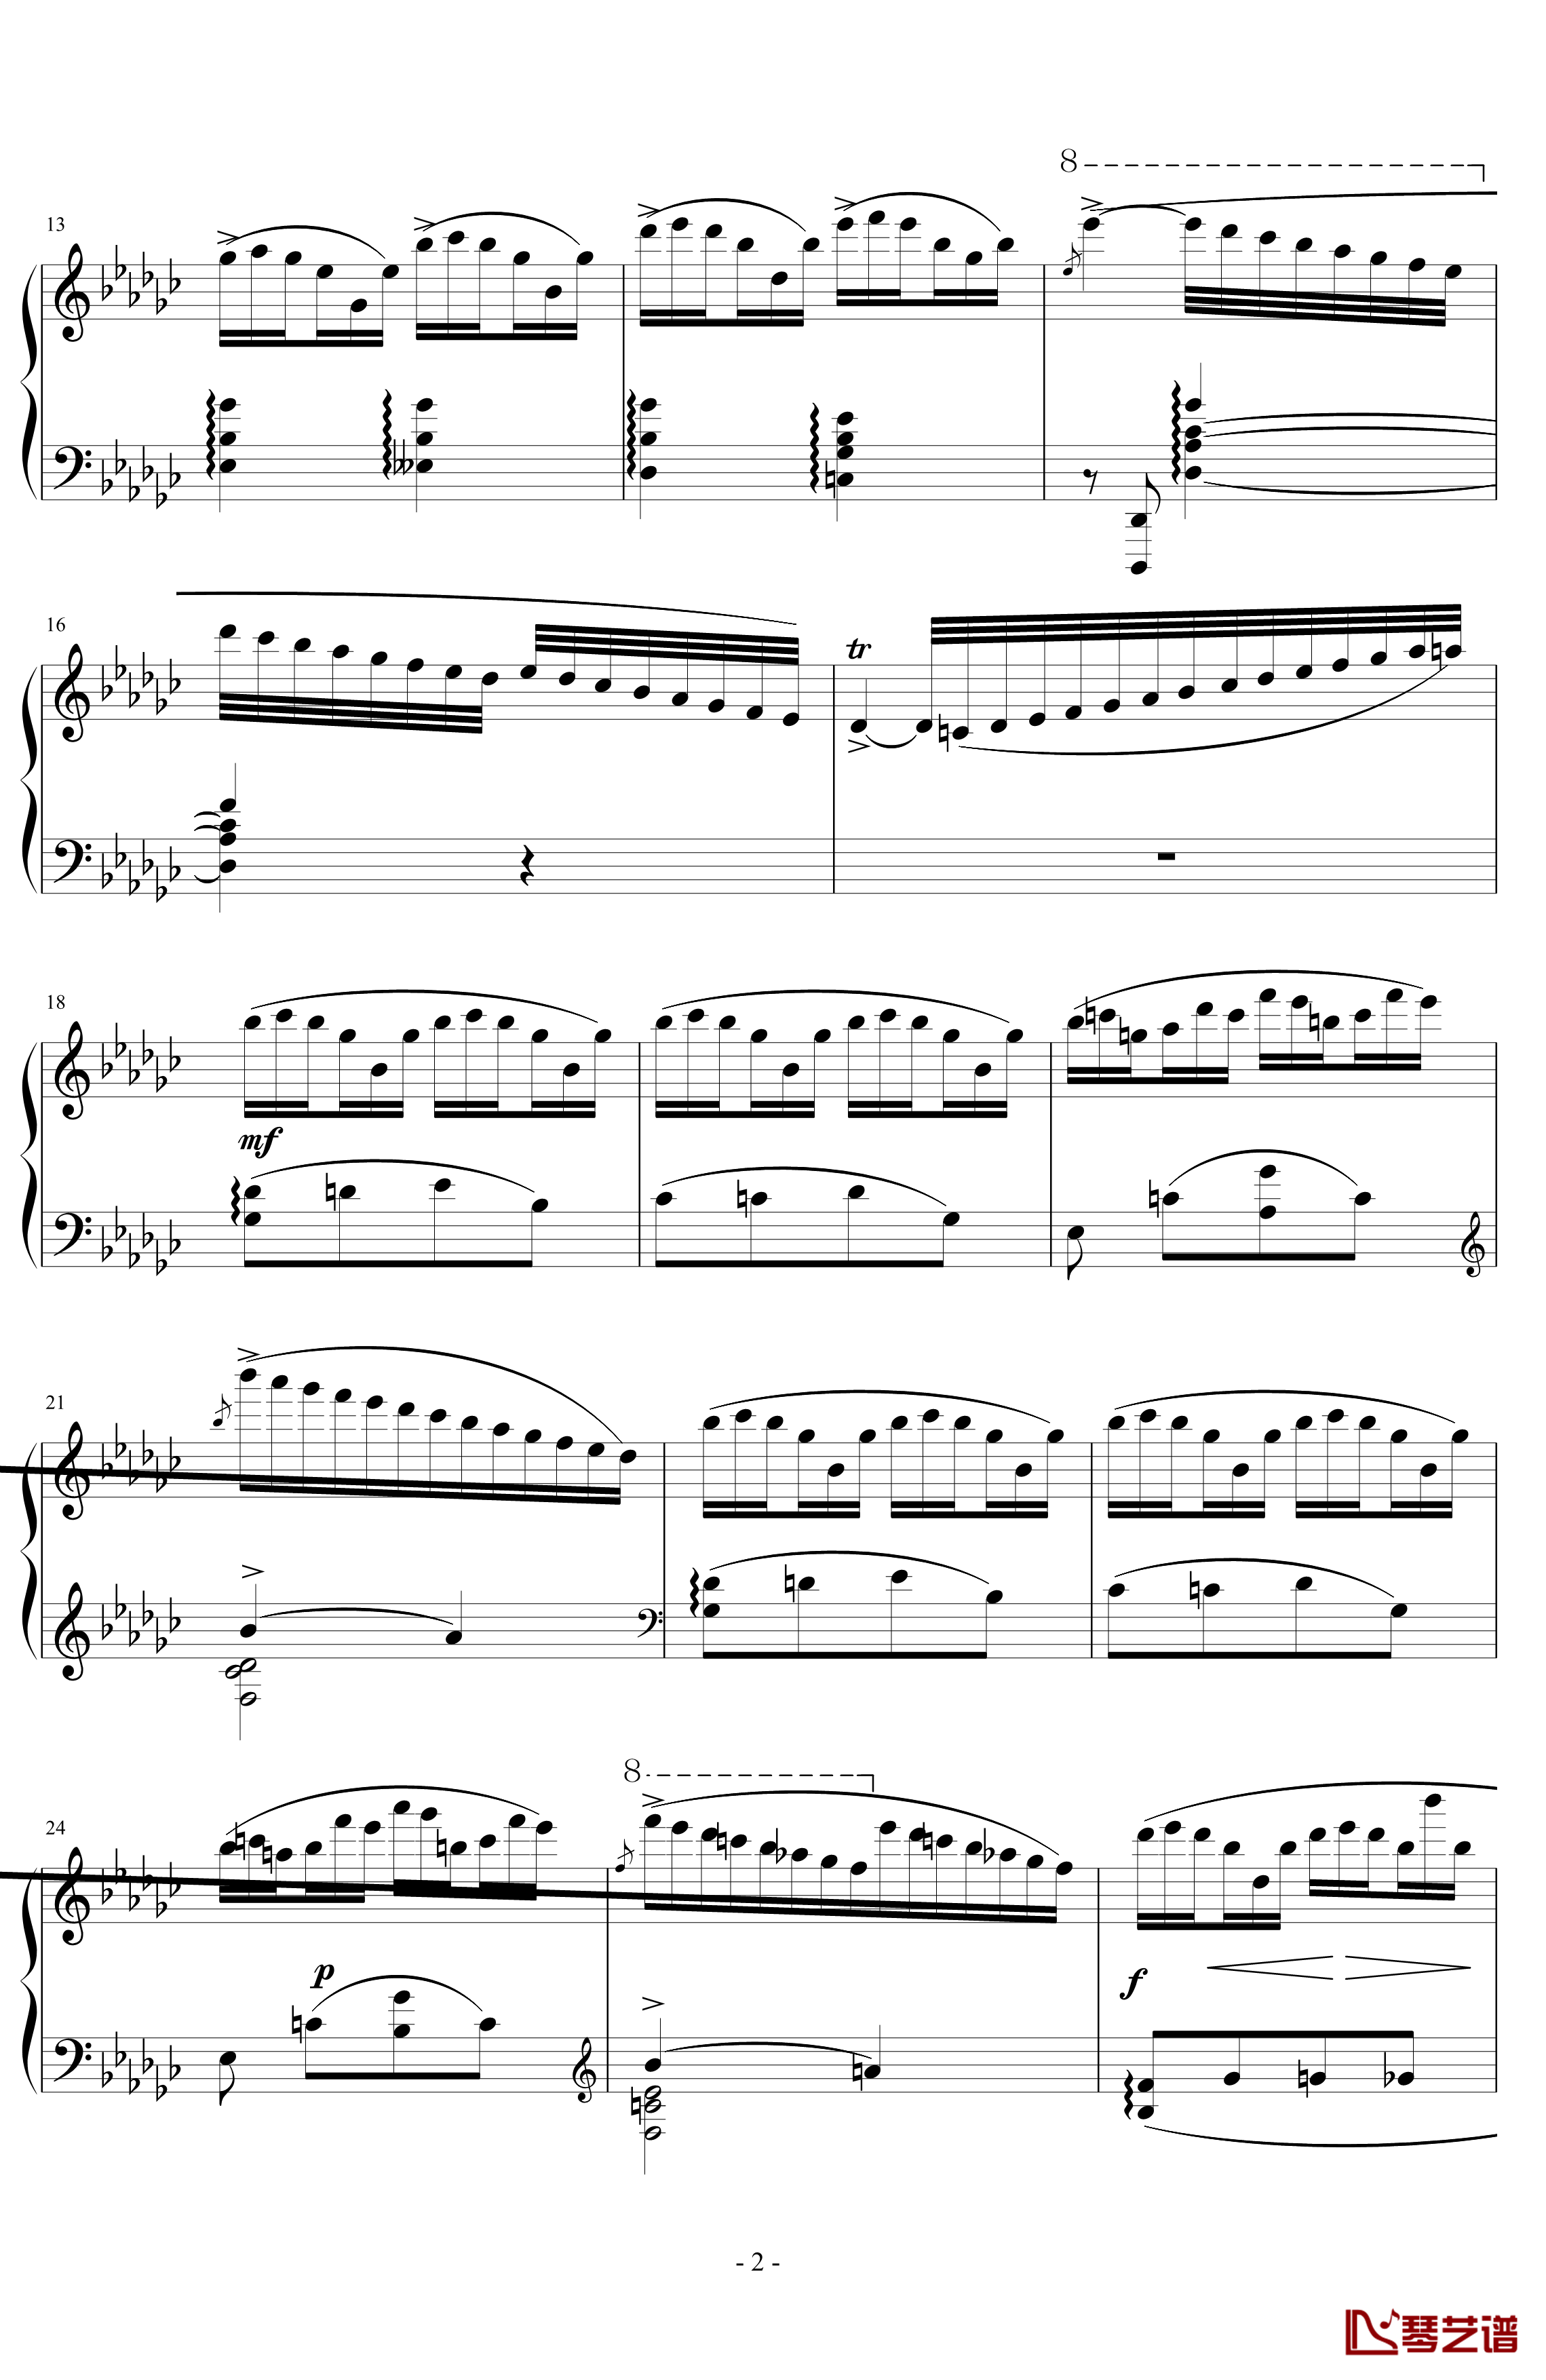 《练习曲Op.25 No.3》钢琴谱-阿连斯基-希望能为大家带来惊喜2